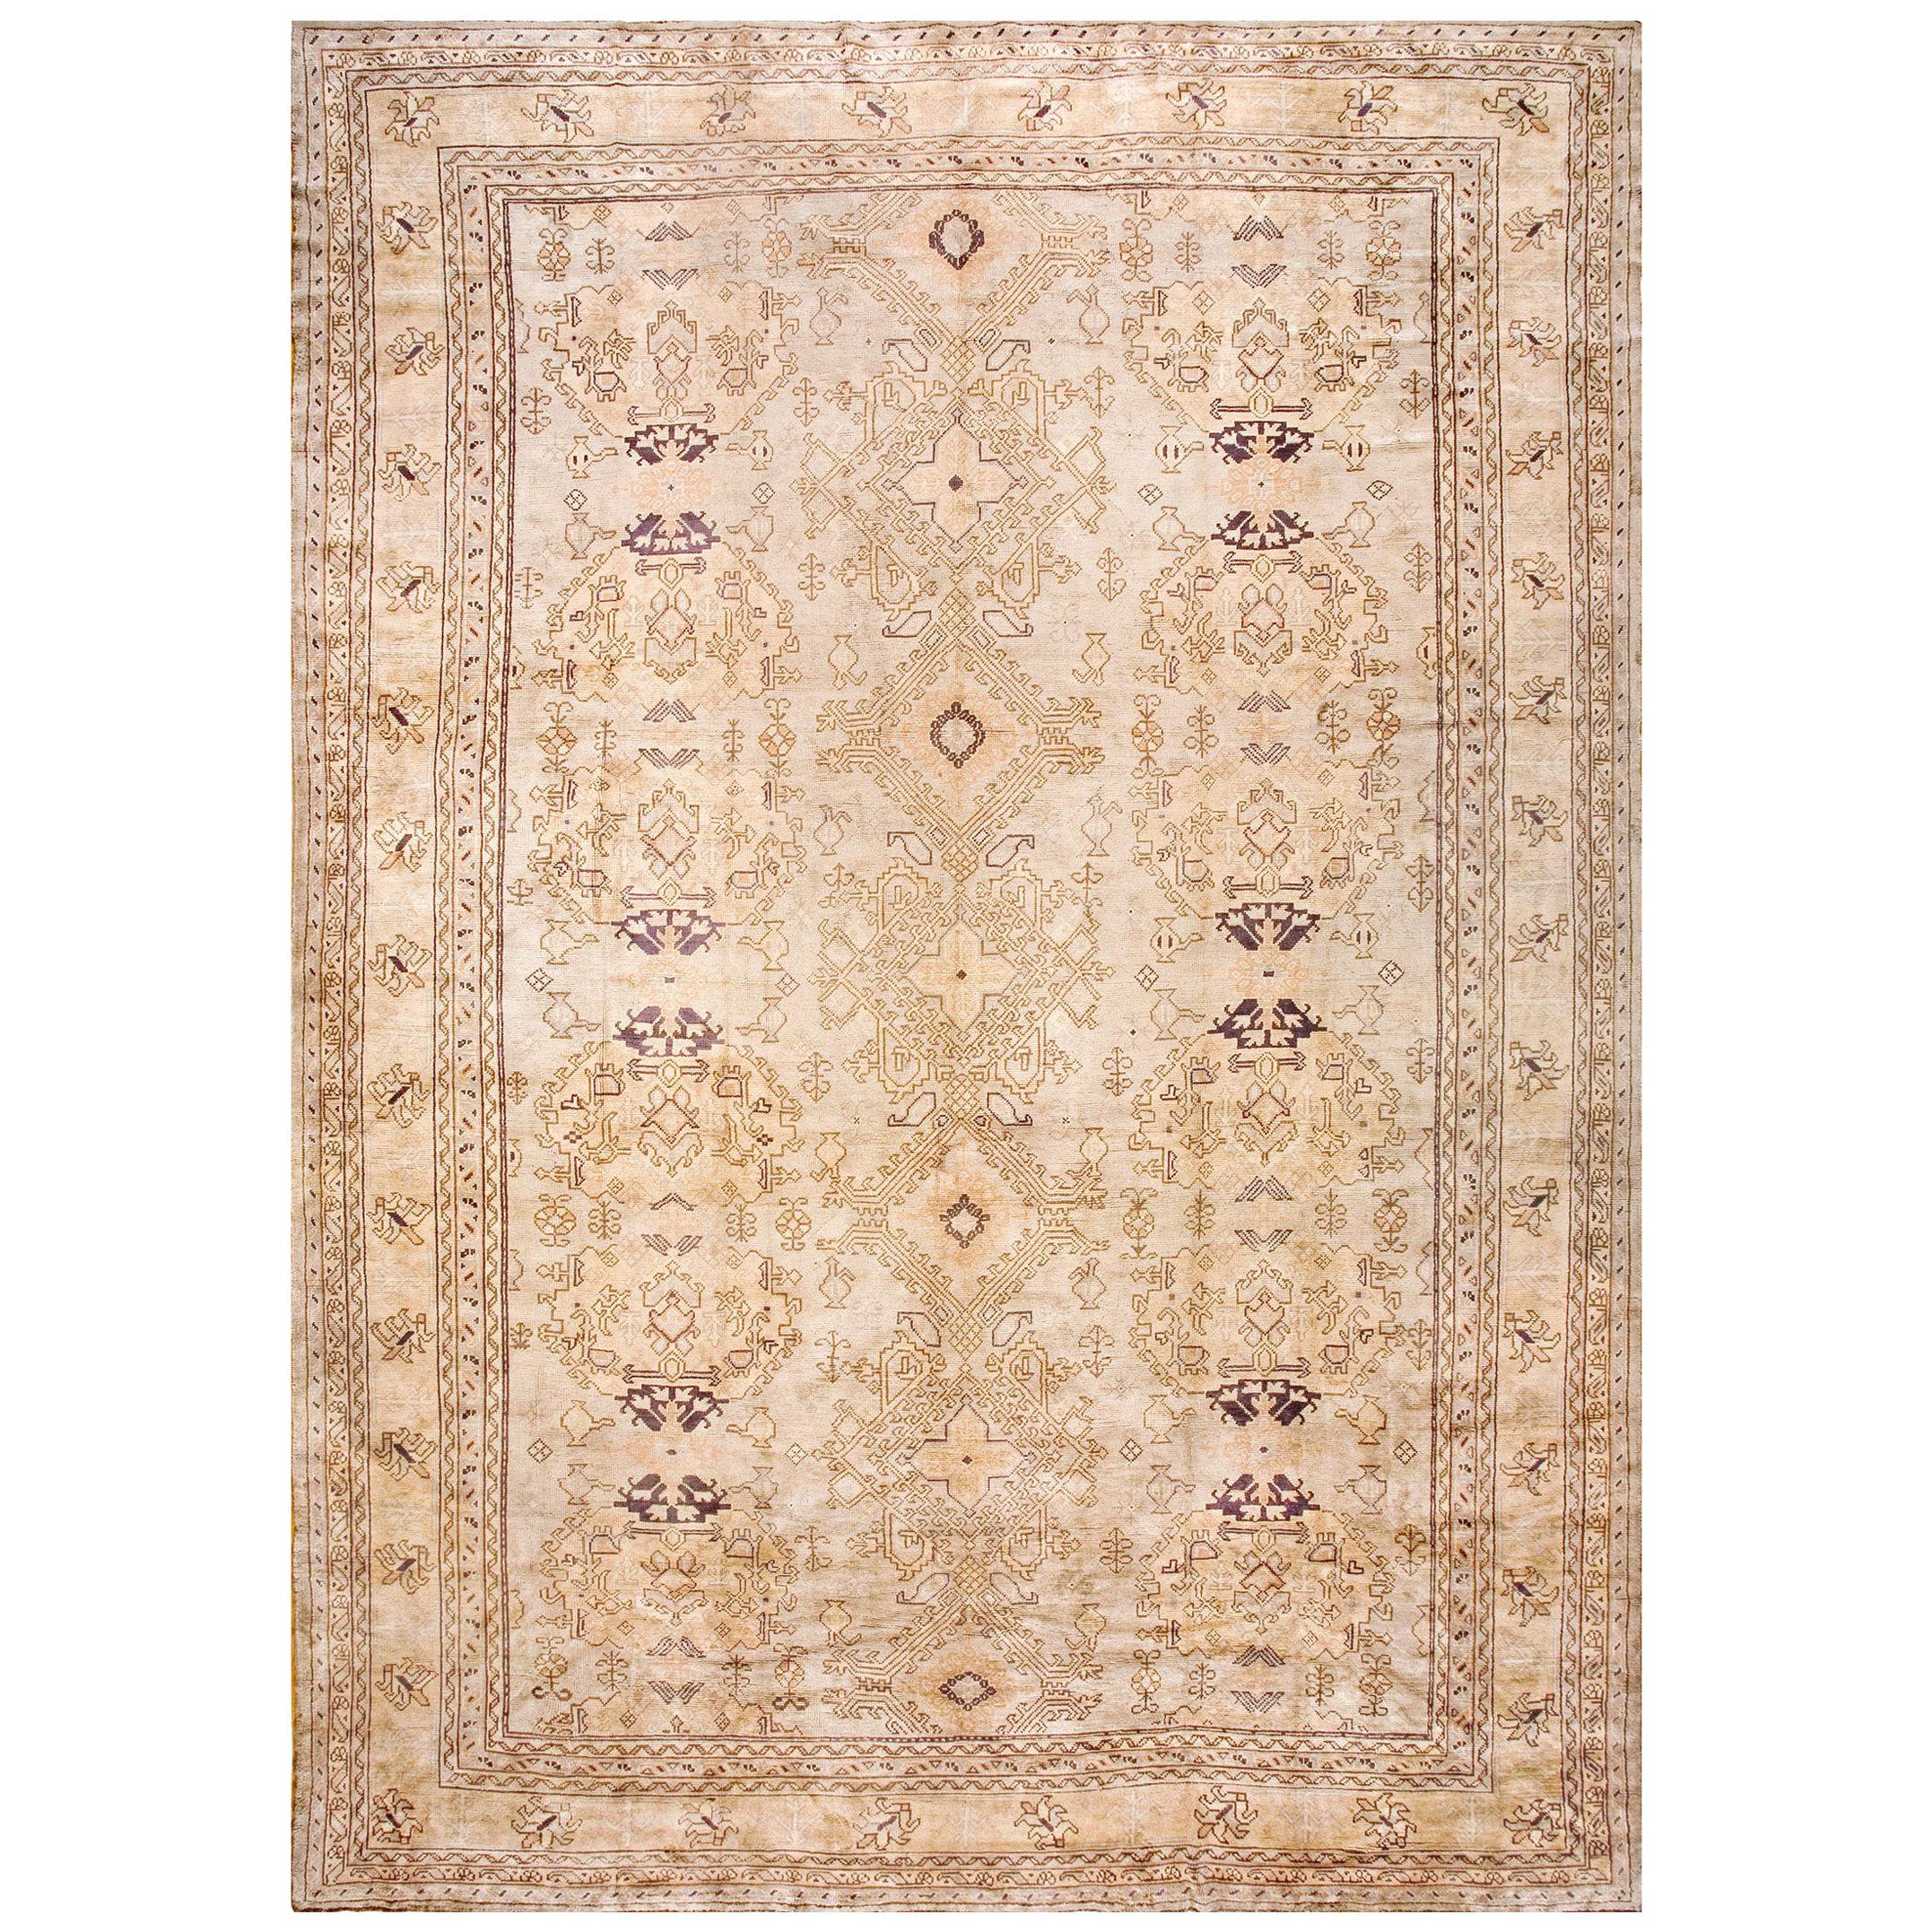 Türkischer Oushak-Teppich des frühen 20. Jahrhunderts ( 13' x 18'4" - 395 x 560)